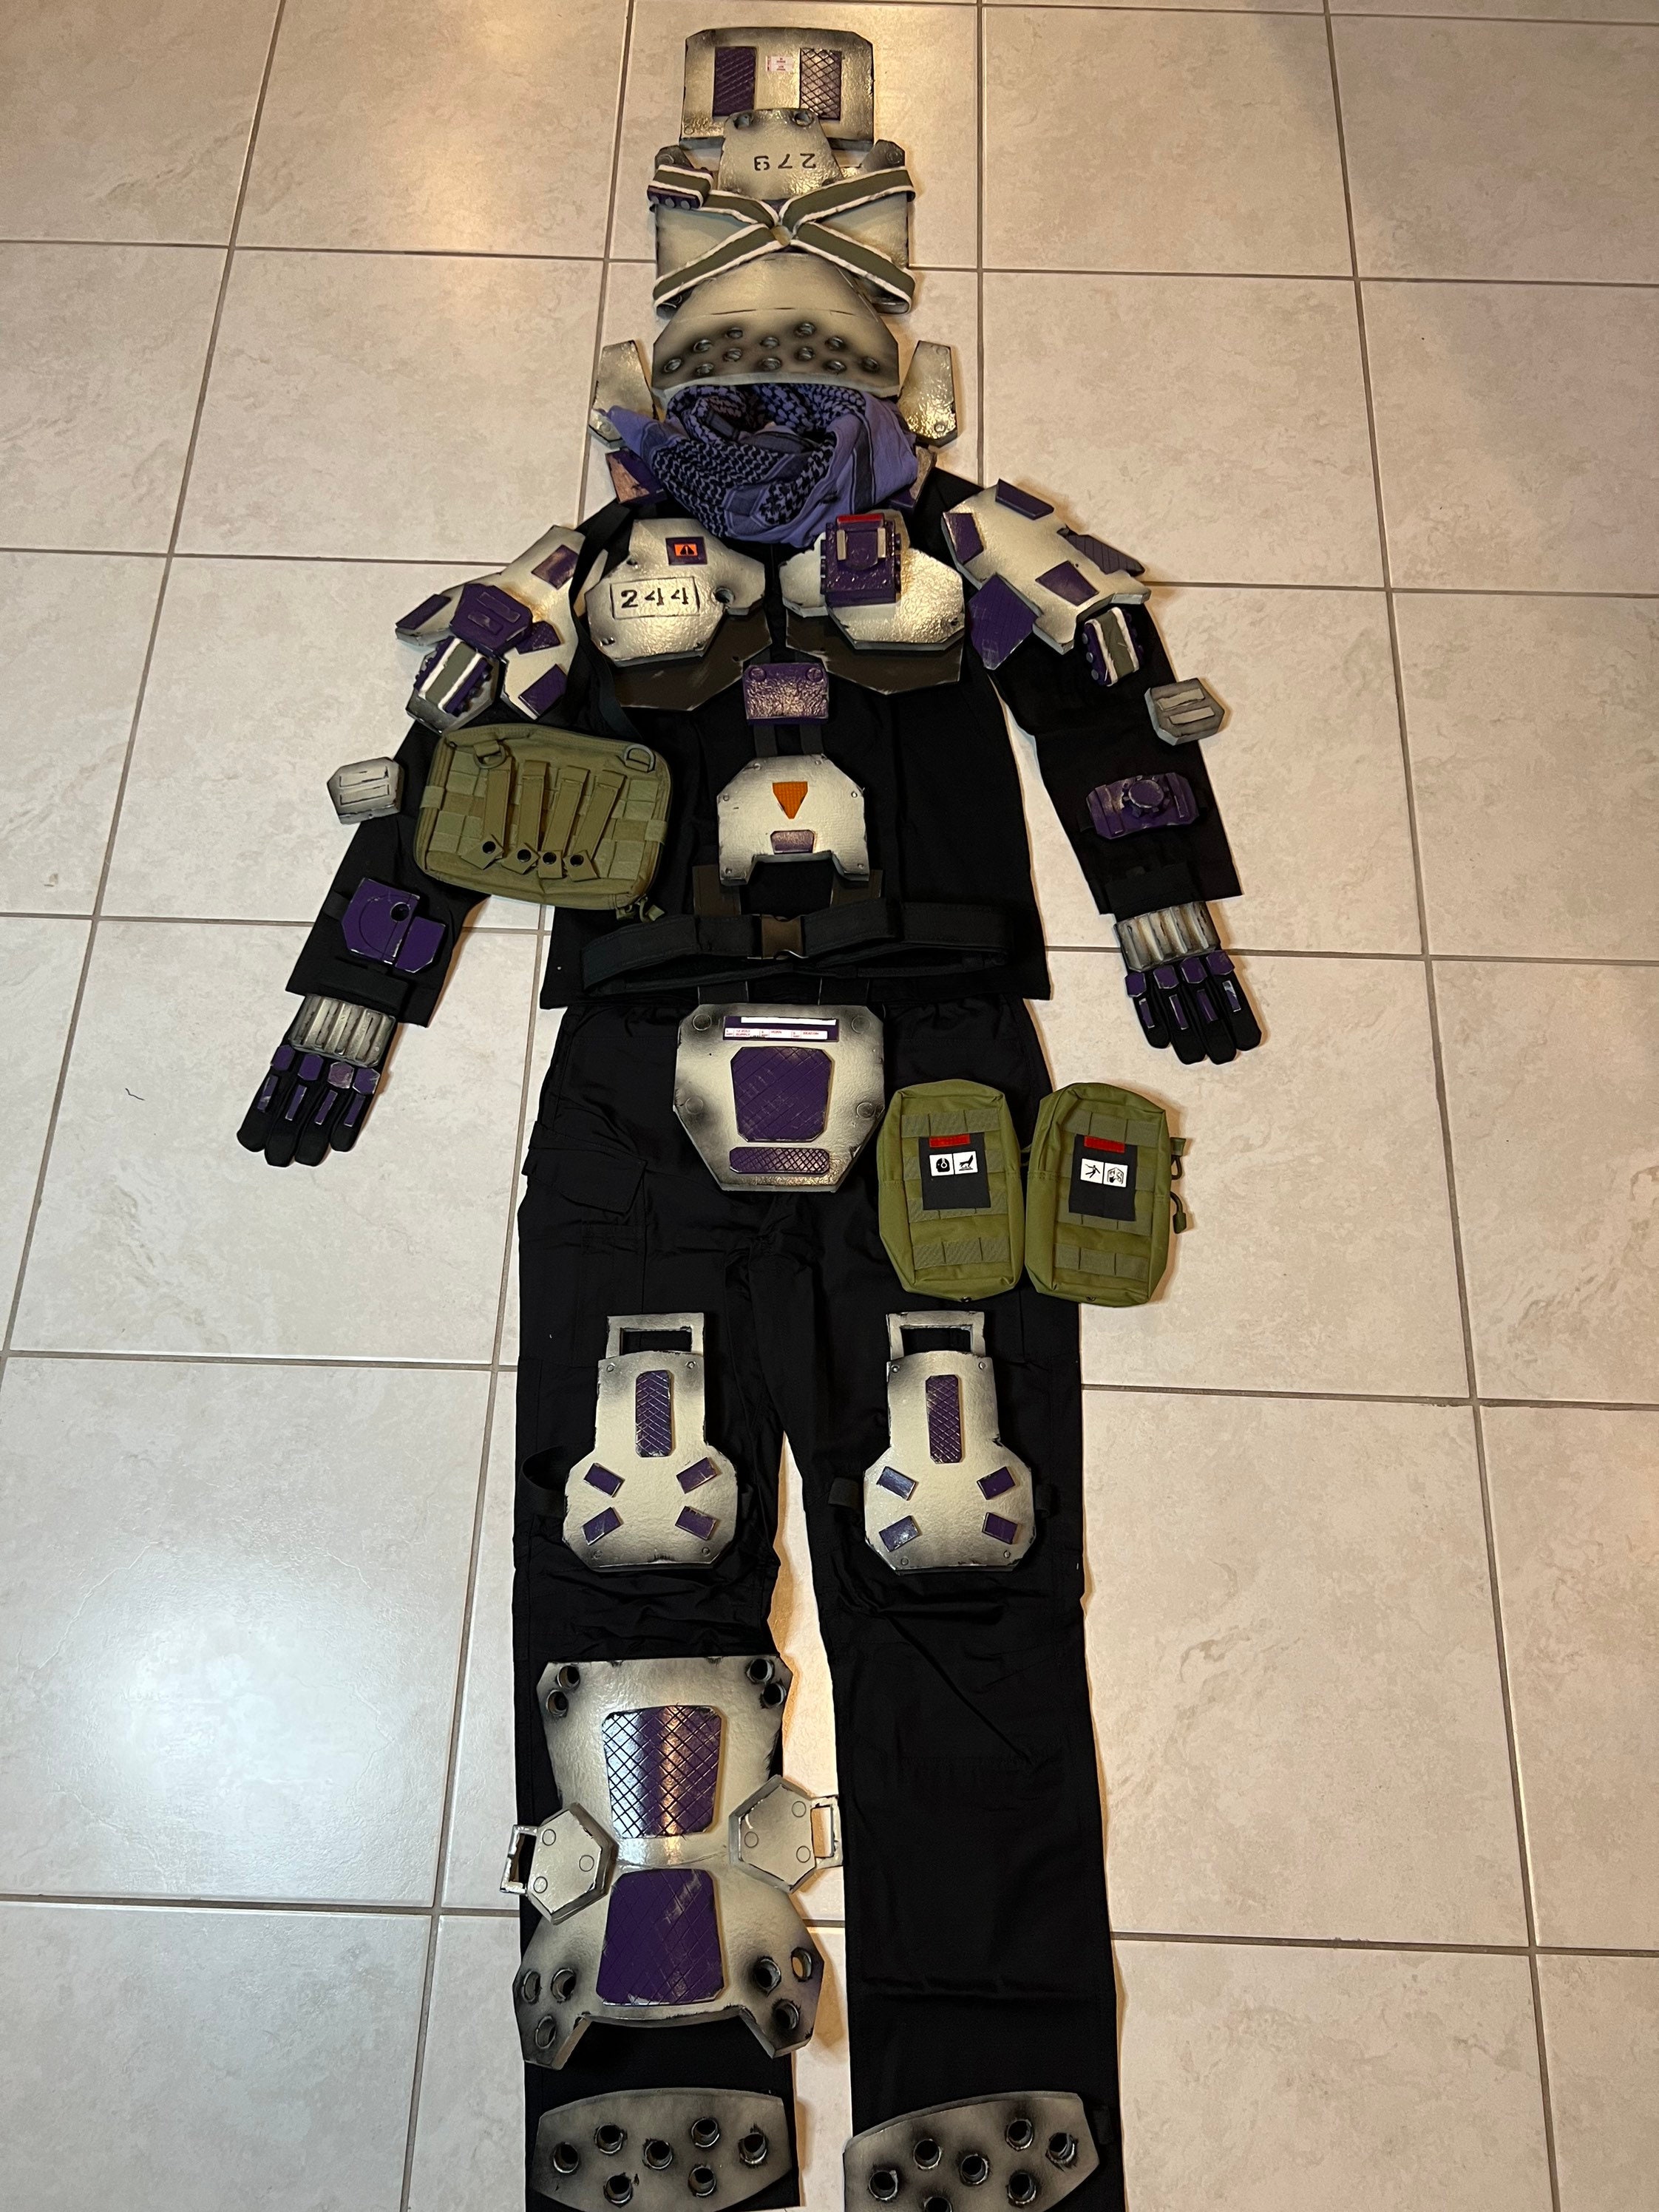 AWARHERO's TitanFall 2 Outfit